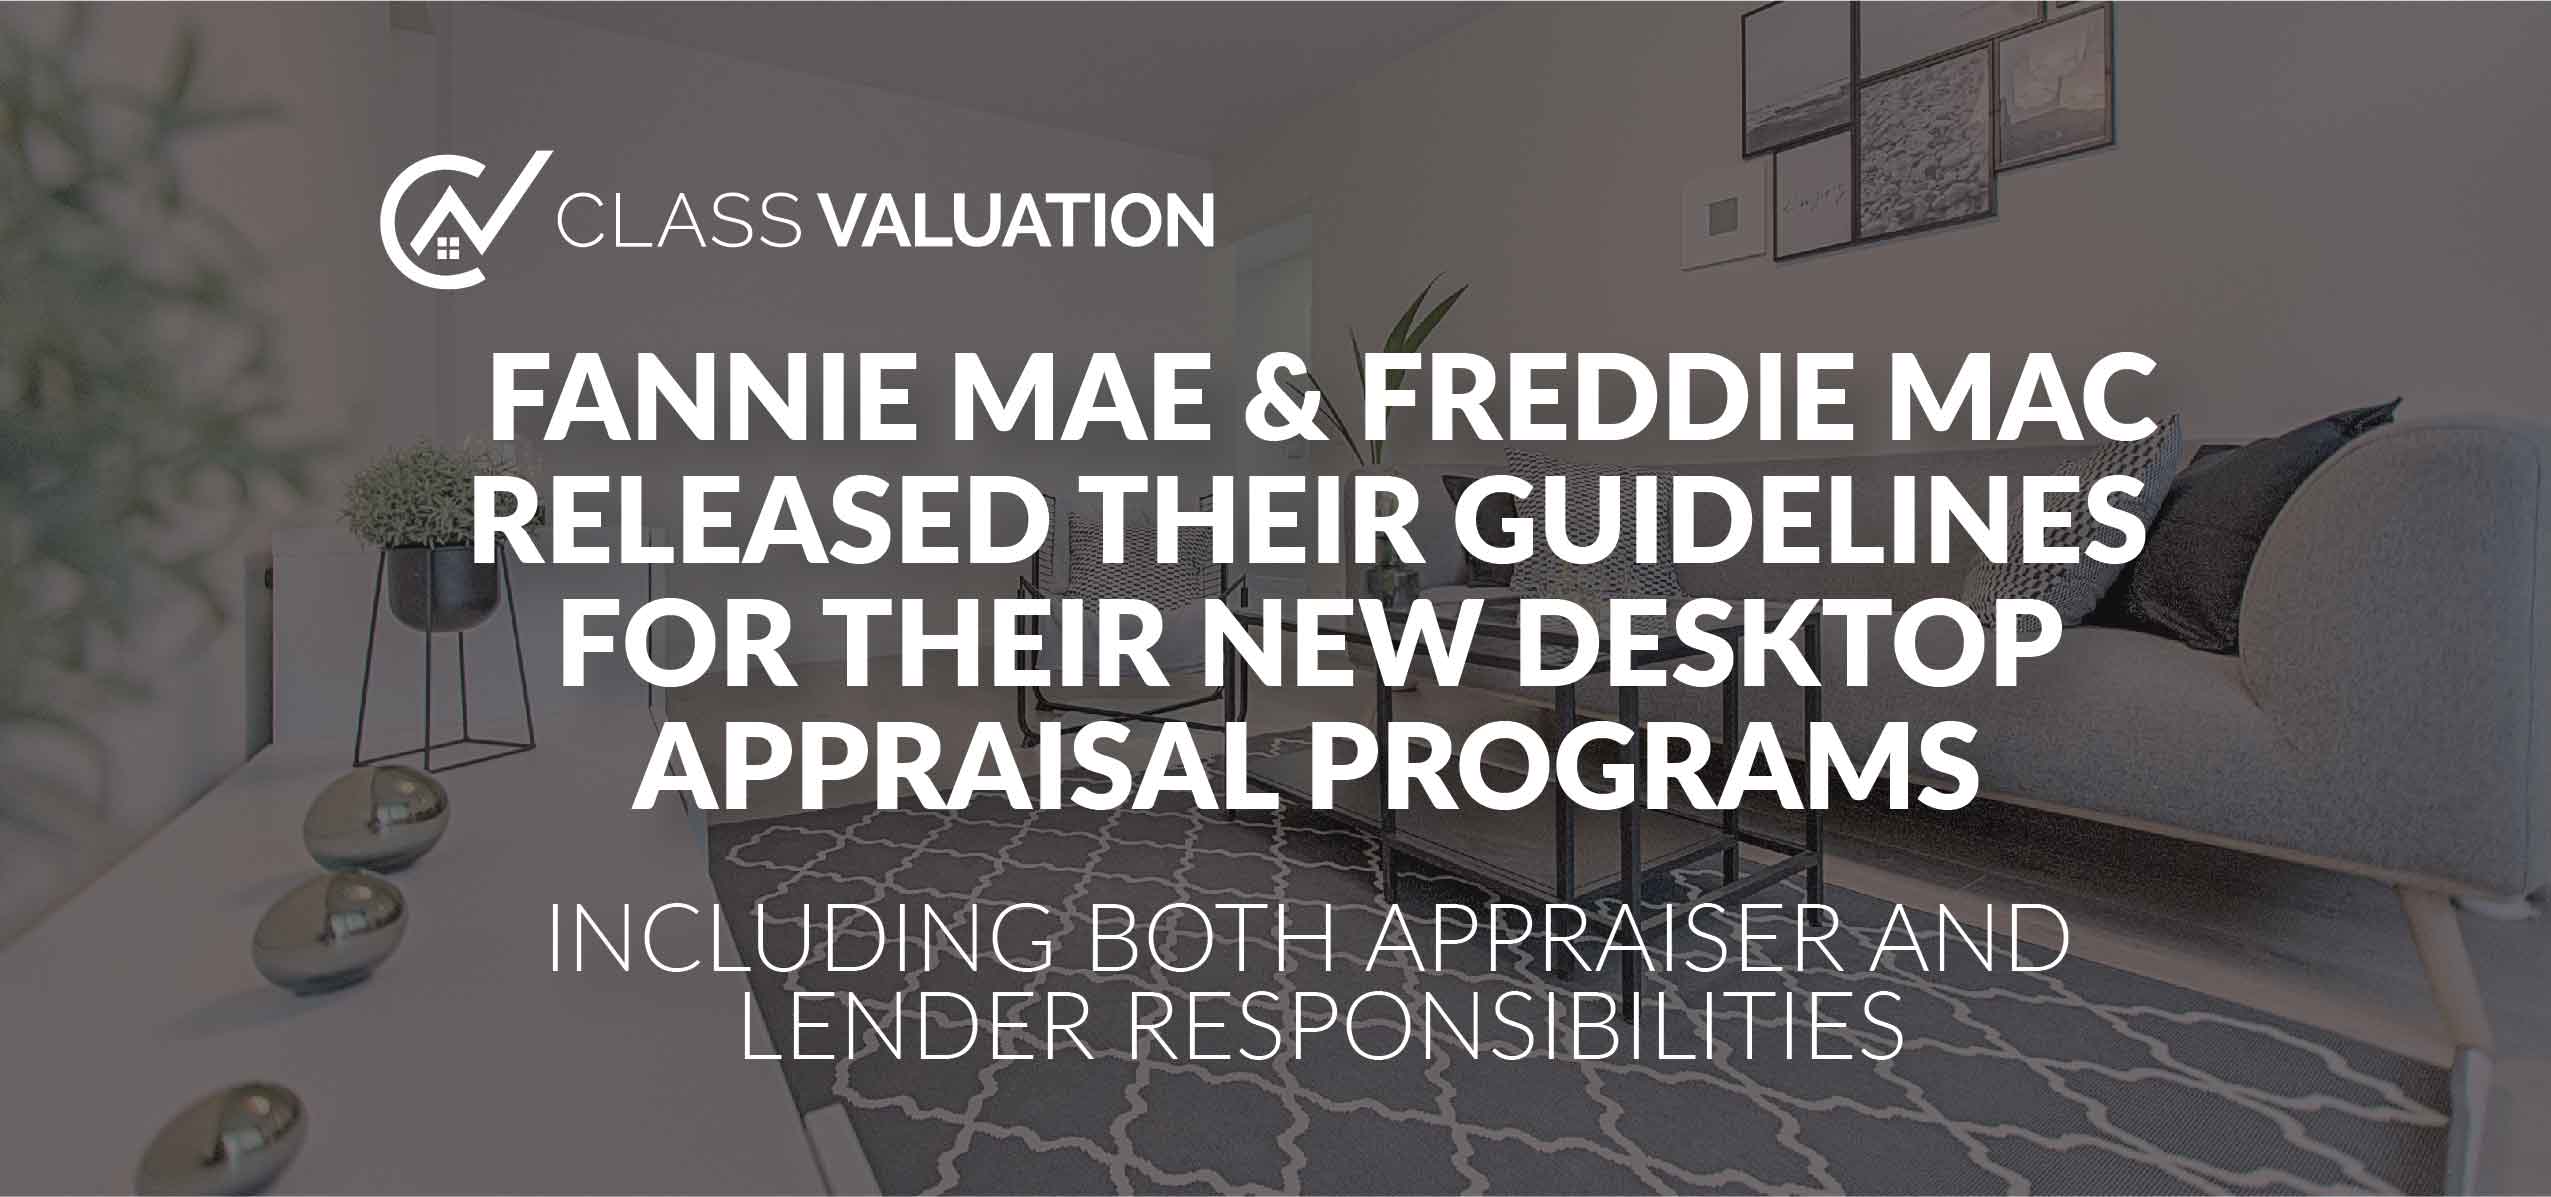 FANNIE MAE & FREDDIE MAC RELEASED THEIR GUIDELINES FOR THEIR NEW DESKTOP APPRAISAL PROGRAMS